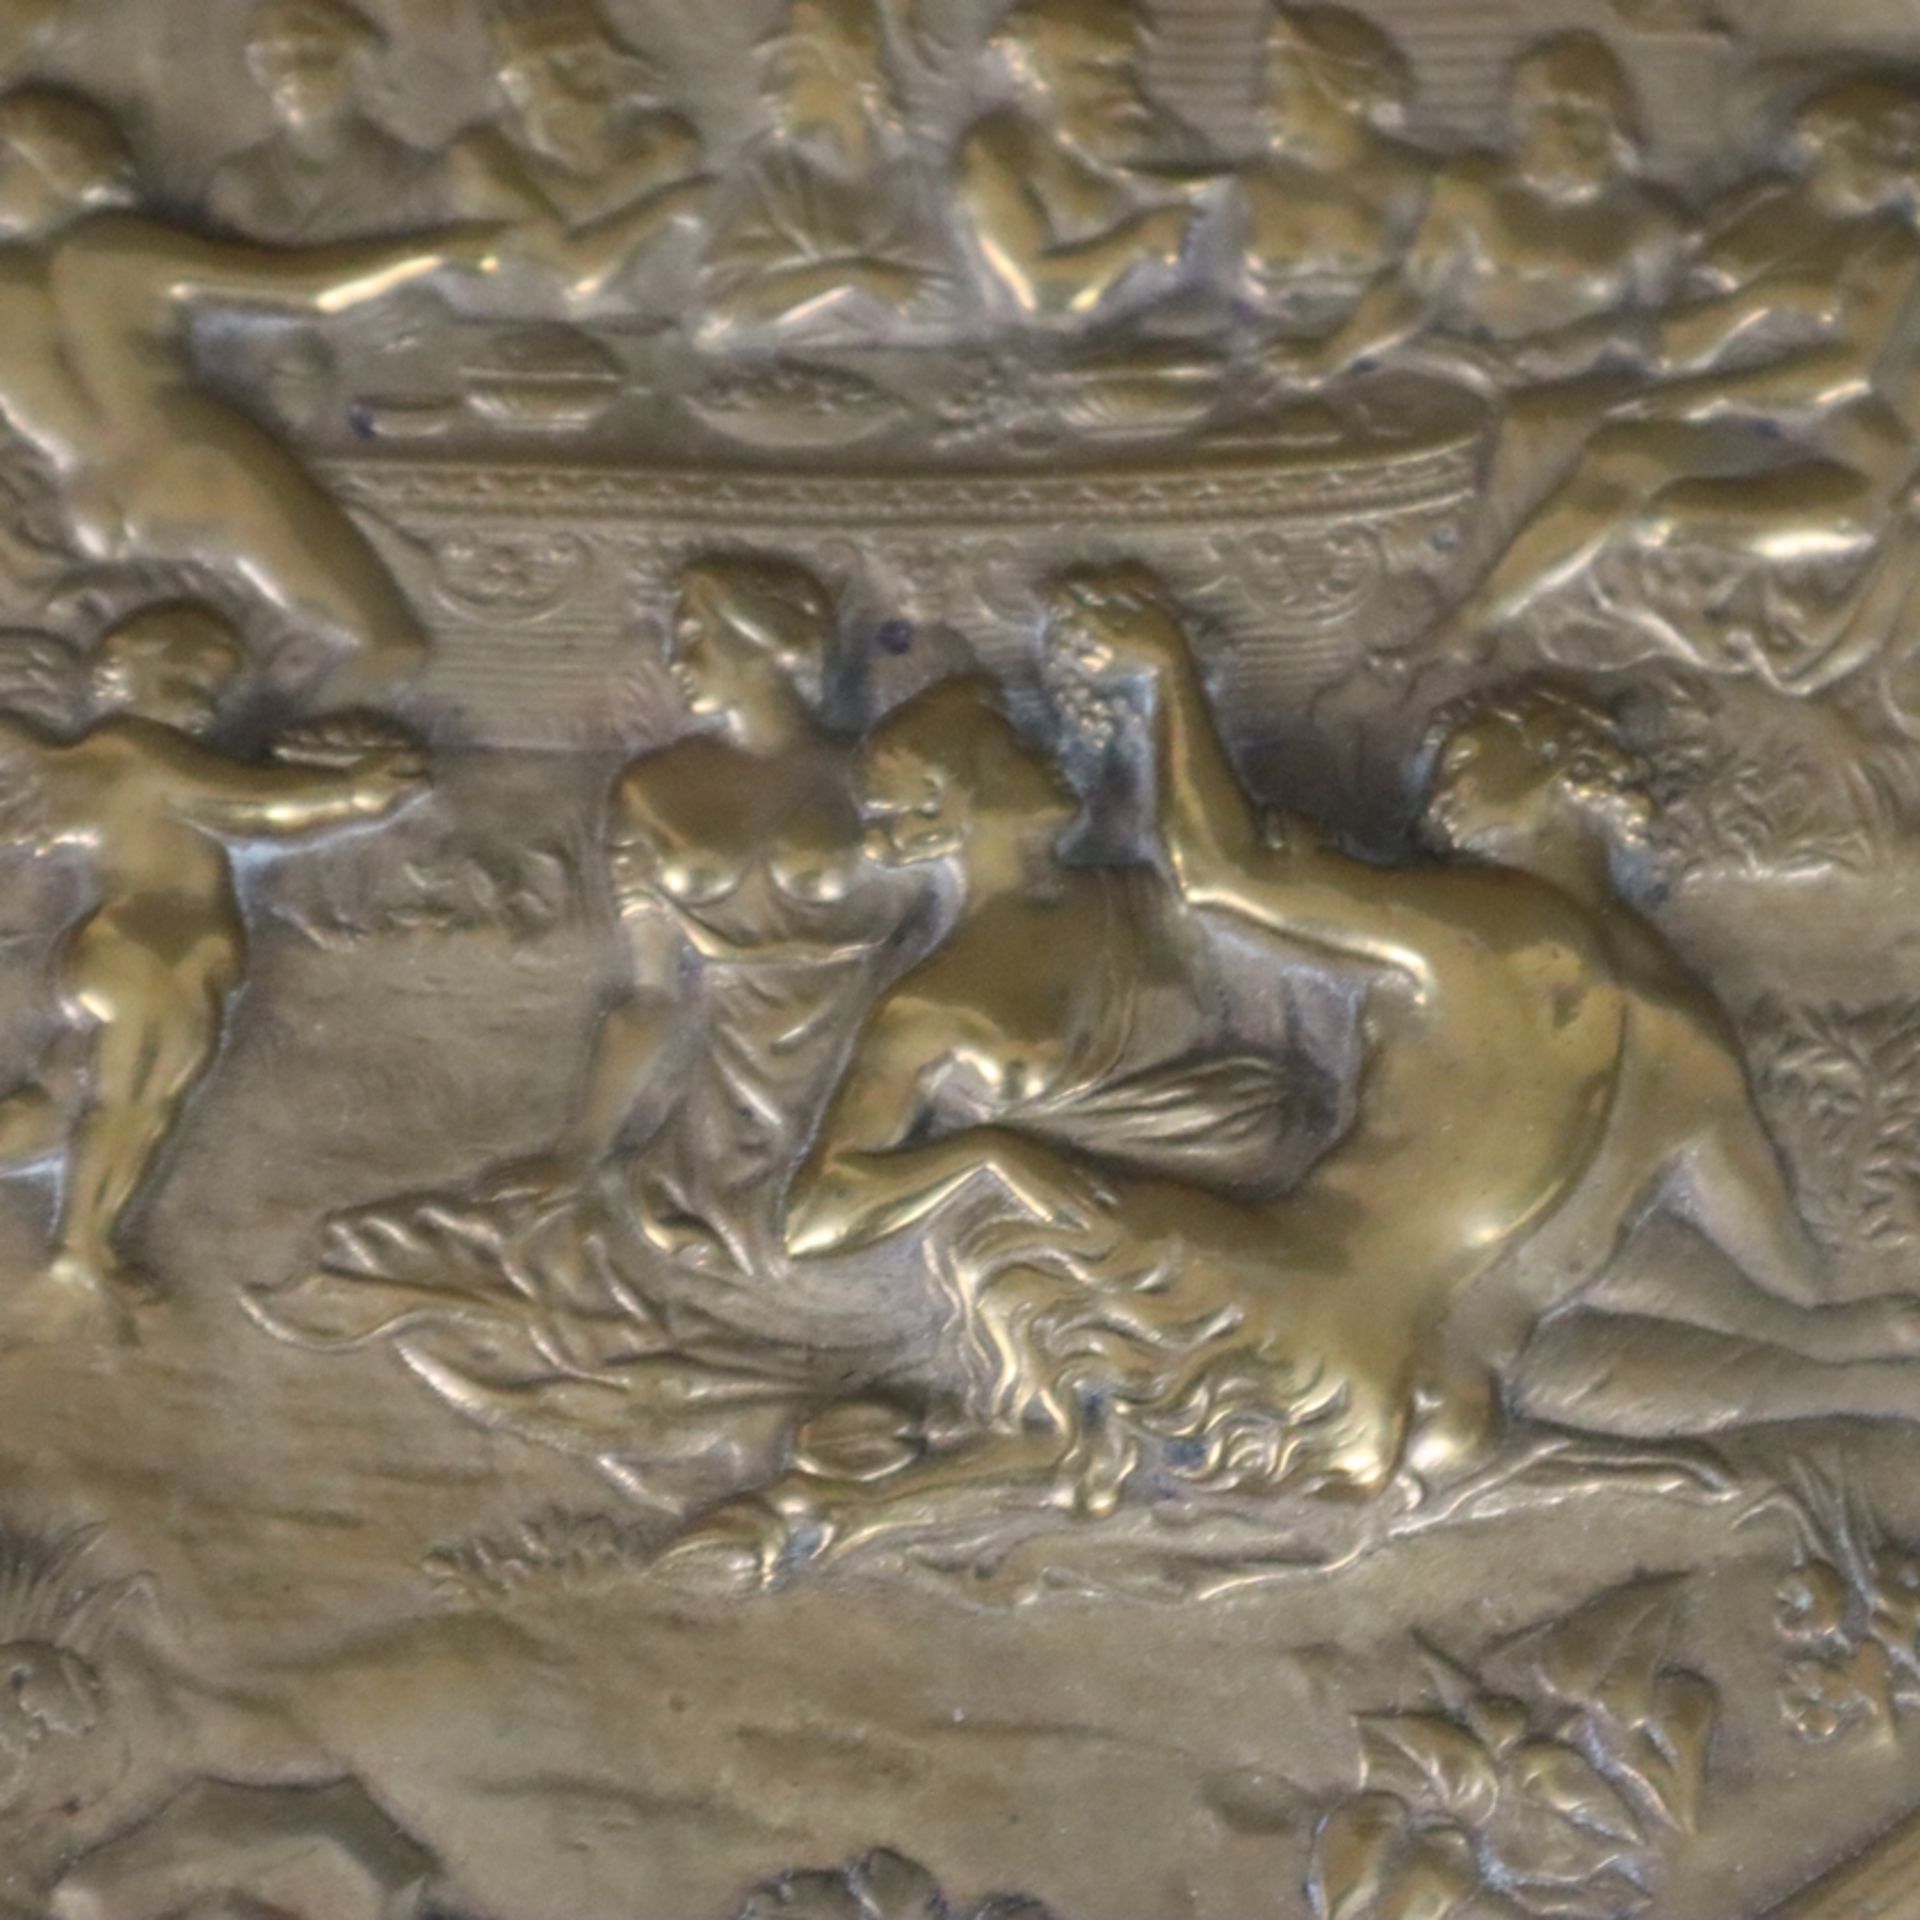 Tafelaufsatz - 19. Jh., Messingteller auf Bronzefuß, im Spiegel Reliefszene mit olympischem Götterm - Bild 3 aus 12